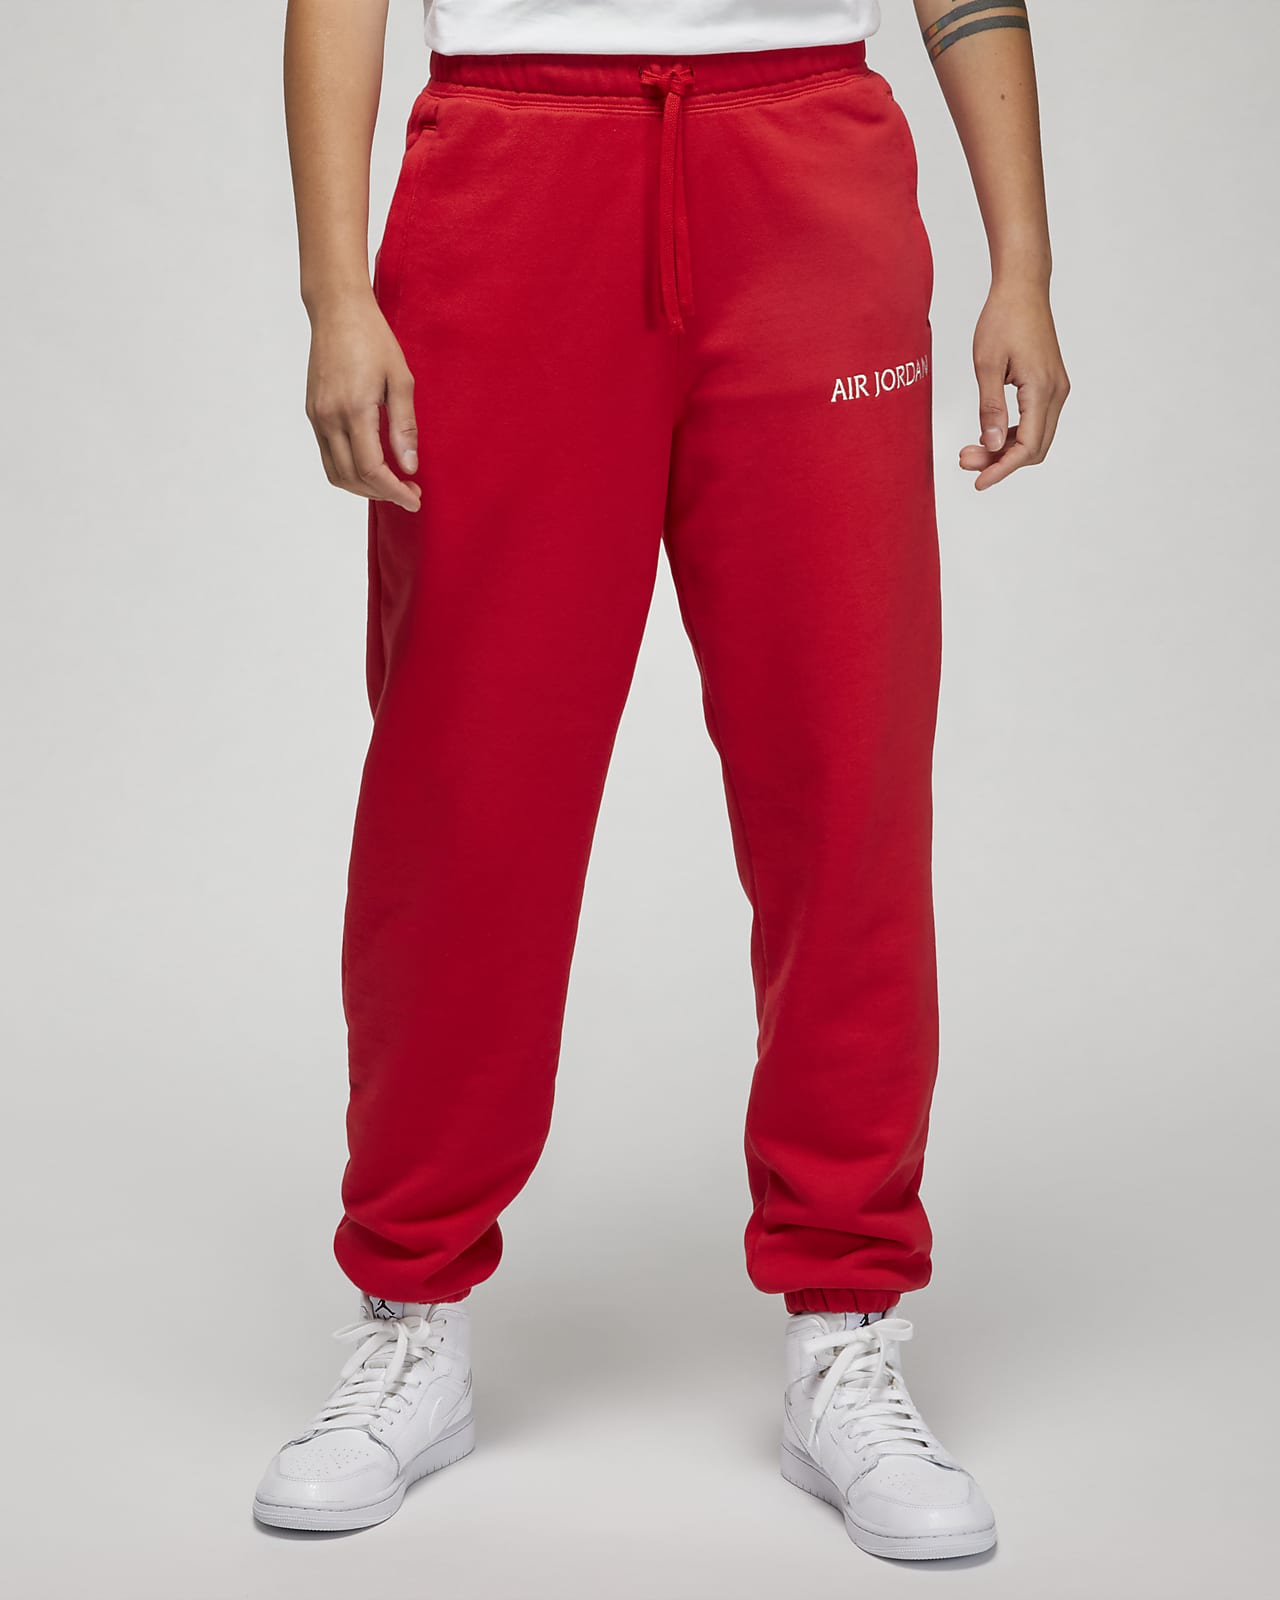 tjeneren Samlet Kunde Air Jordan Women's Sweatpants. Nike.com